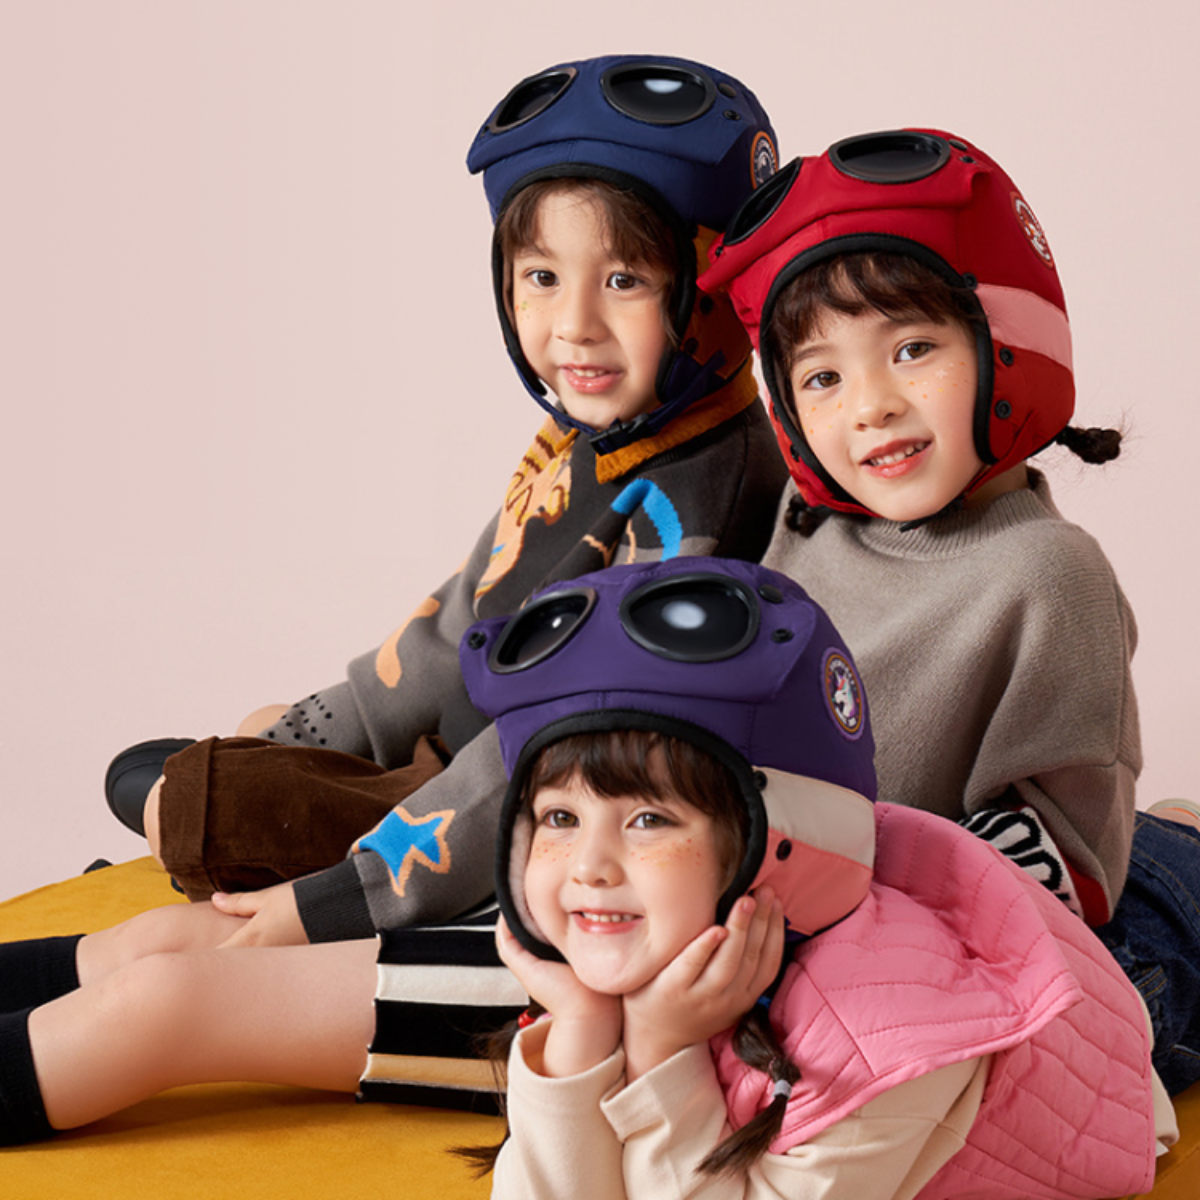 『子ども防寒対策』子供用 3 in 1 帽子 サングラス・耳保護・フェースガード｜防風・保温、雪遊びにの最強保護！|undefined